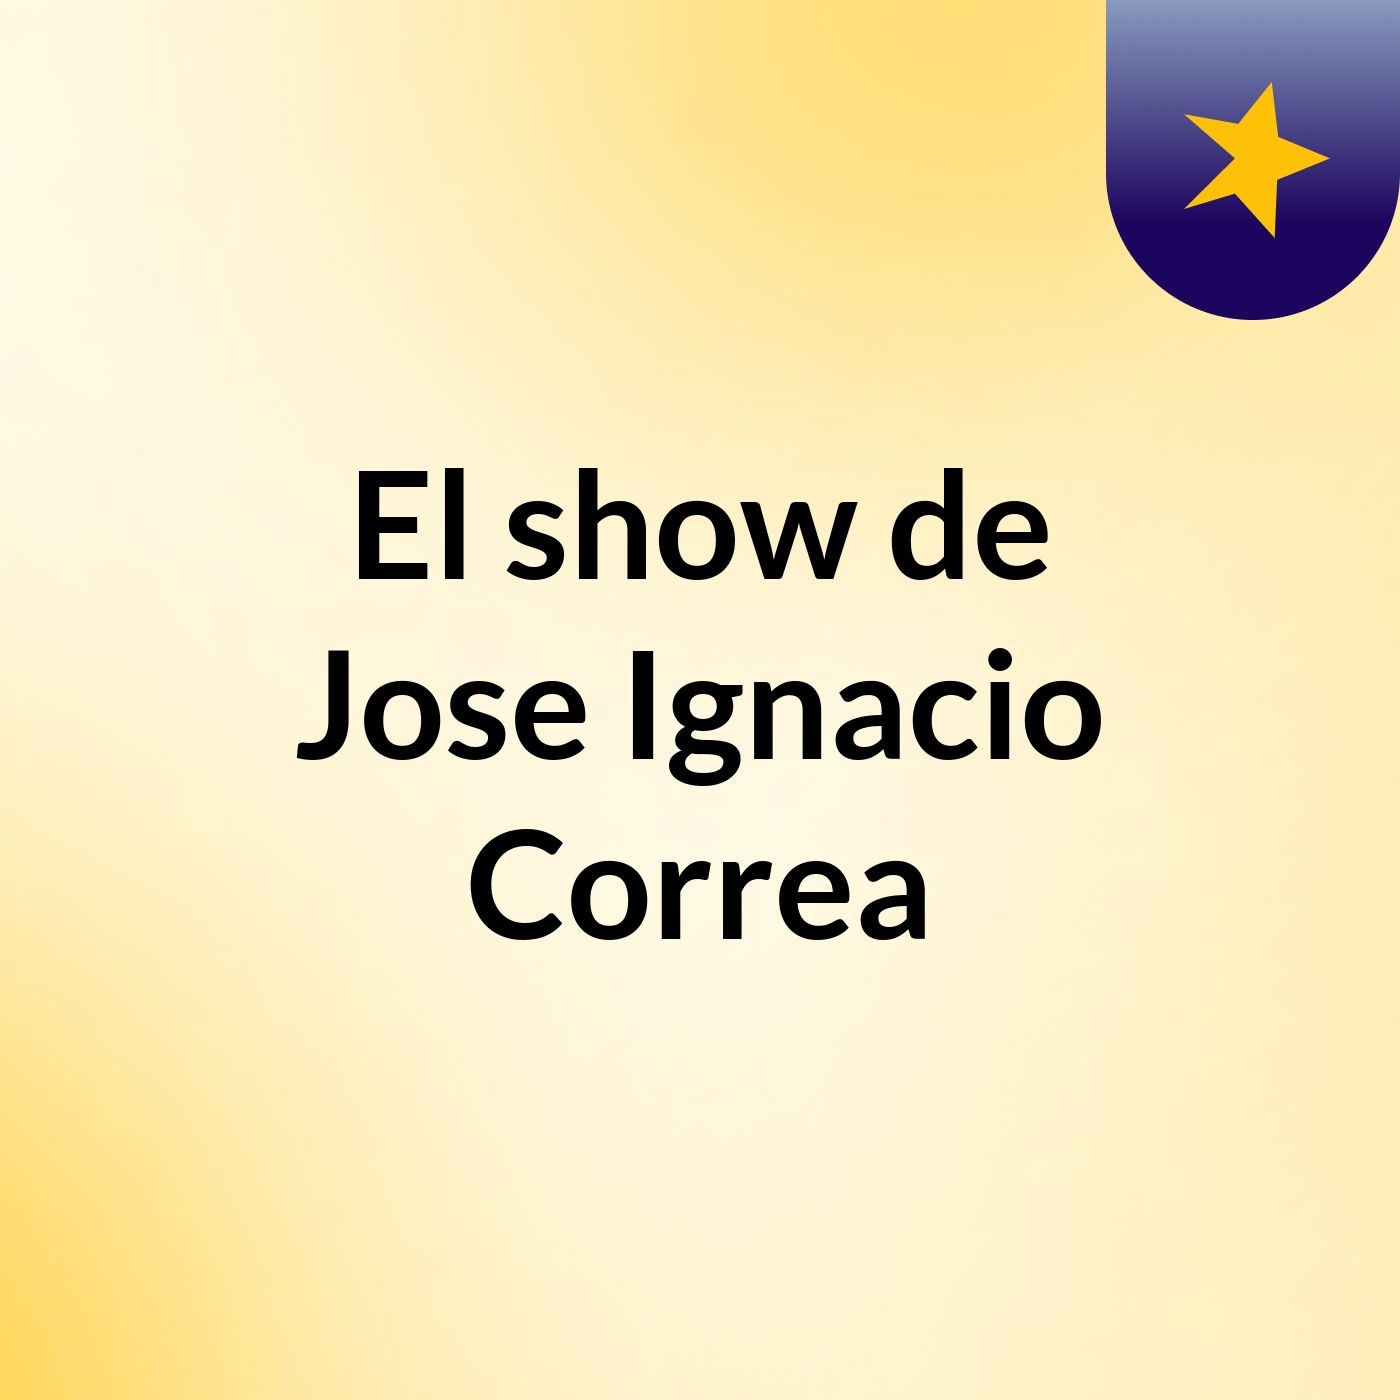 El show de Jose Ignacio Correa